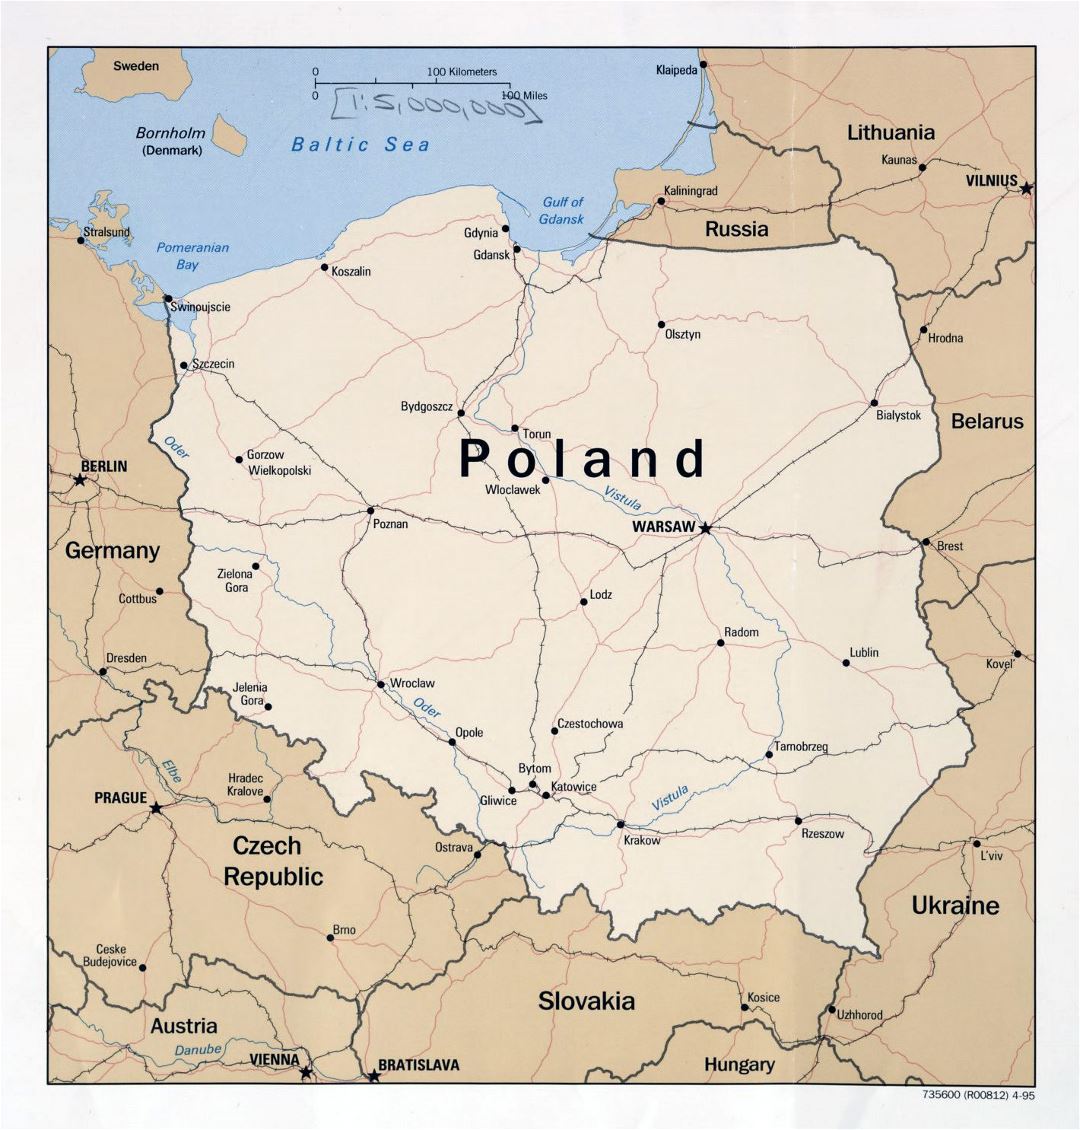 Grande detallado mapa política de Polonia con carreteras, ferrocarriles y principales ciudades - 1995